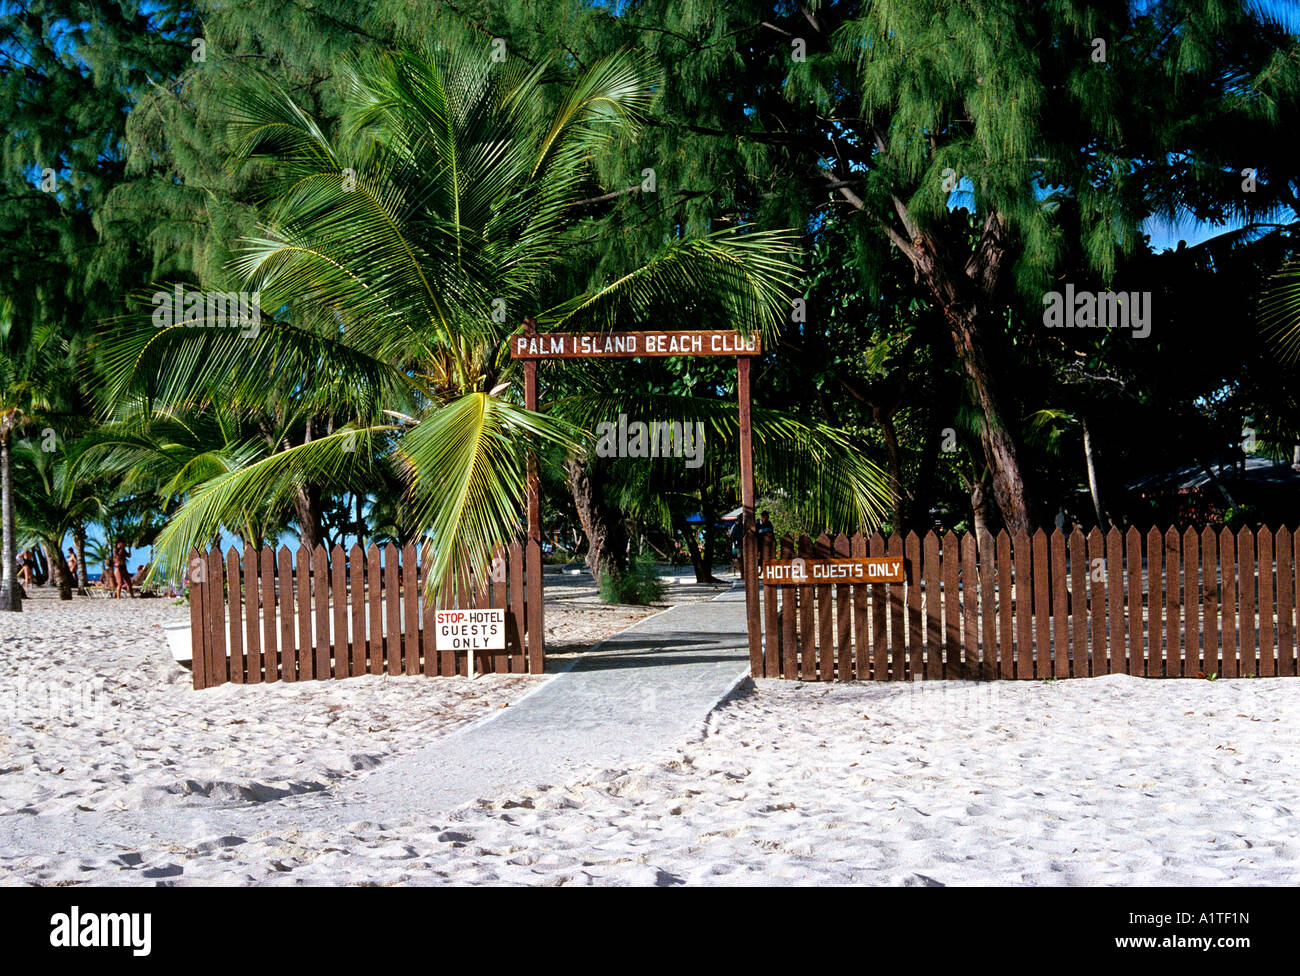 Les clients de l'hôtel seul signe île de Grenade archipel des Petites Antilles caraïbes editorial Utilisez uniquement Banque D'Images